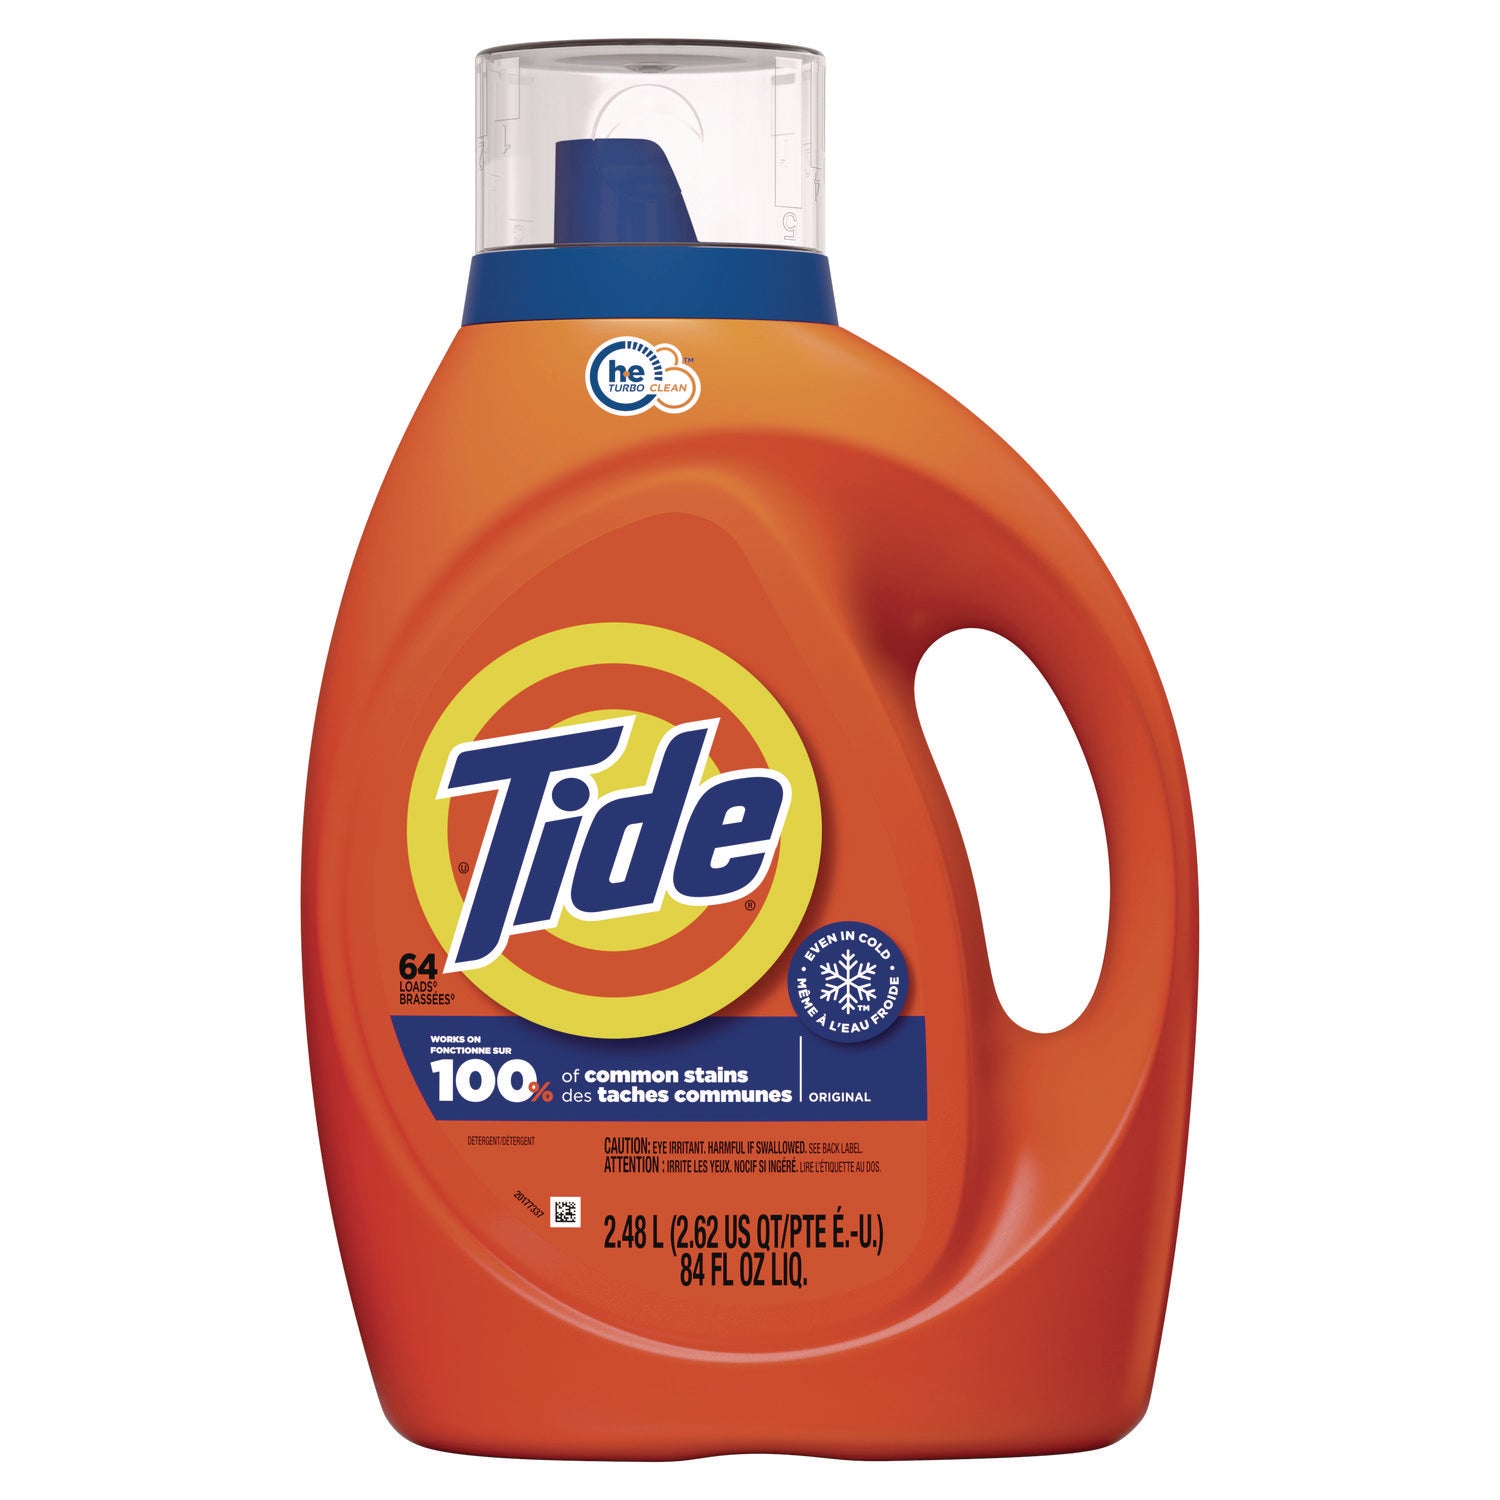 he-laundry-detergent-original-scent-liquid-64-loads-84-oz-bottle-4-carton_pgc12110ct - 1